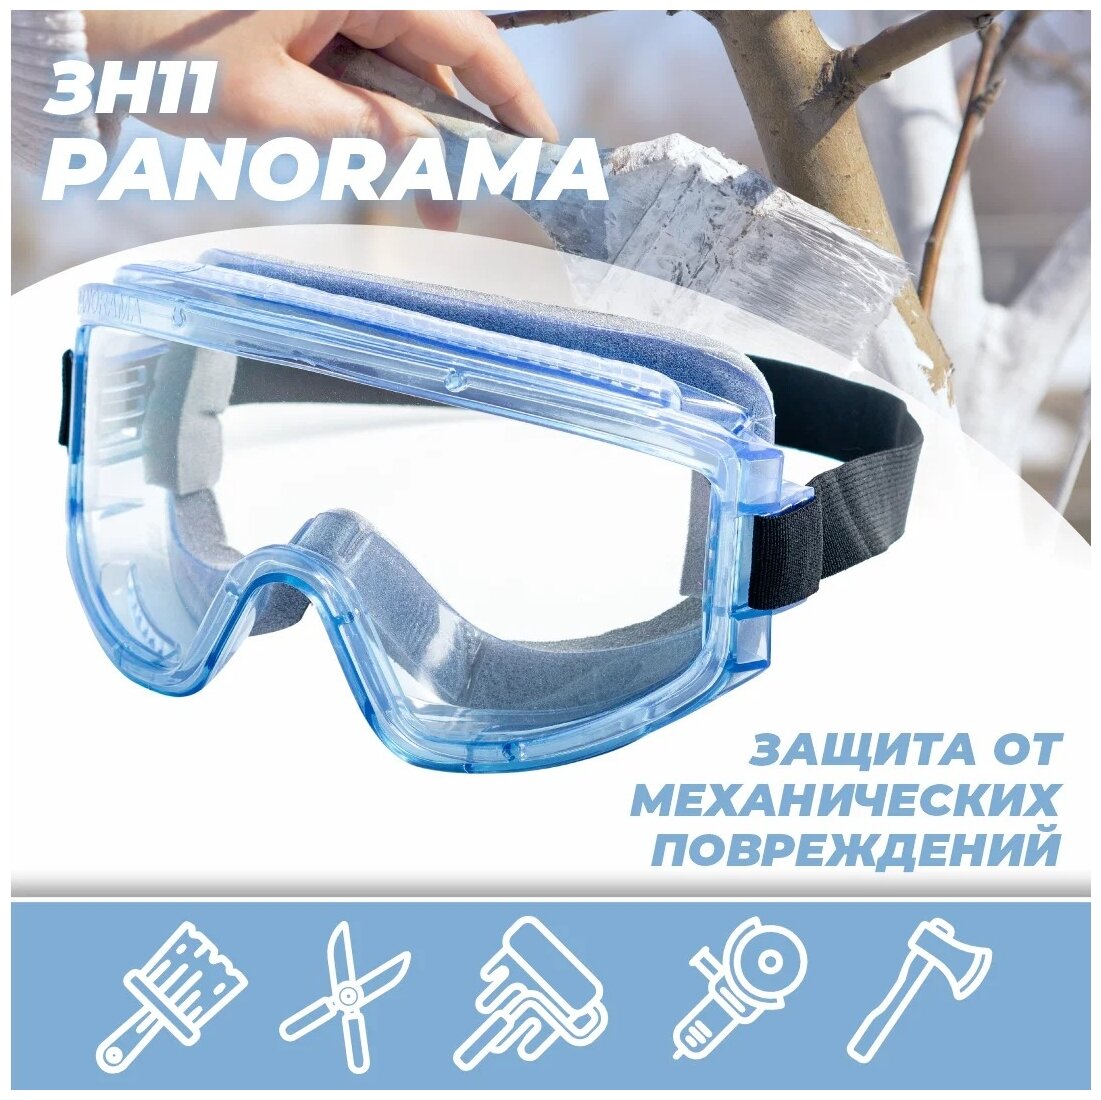 Очки защитные / строительные / тактические / горнолыжные / для снегохода РОСОМЗ ЗН11 PANORAMA super прозрачные арт. 21130